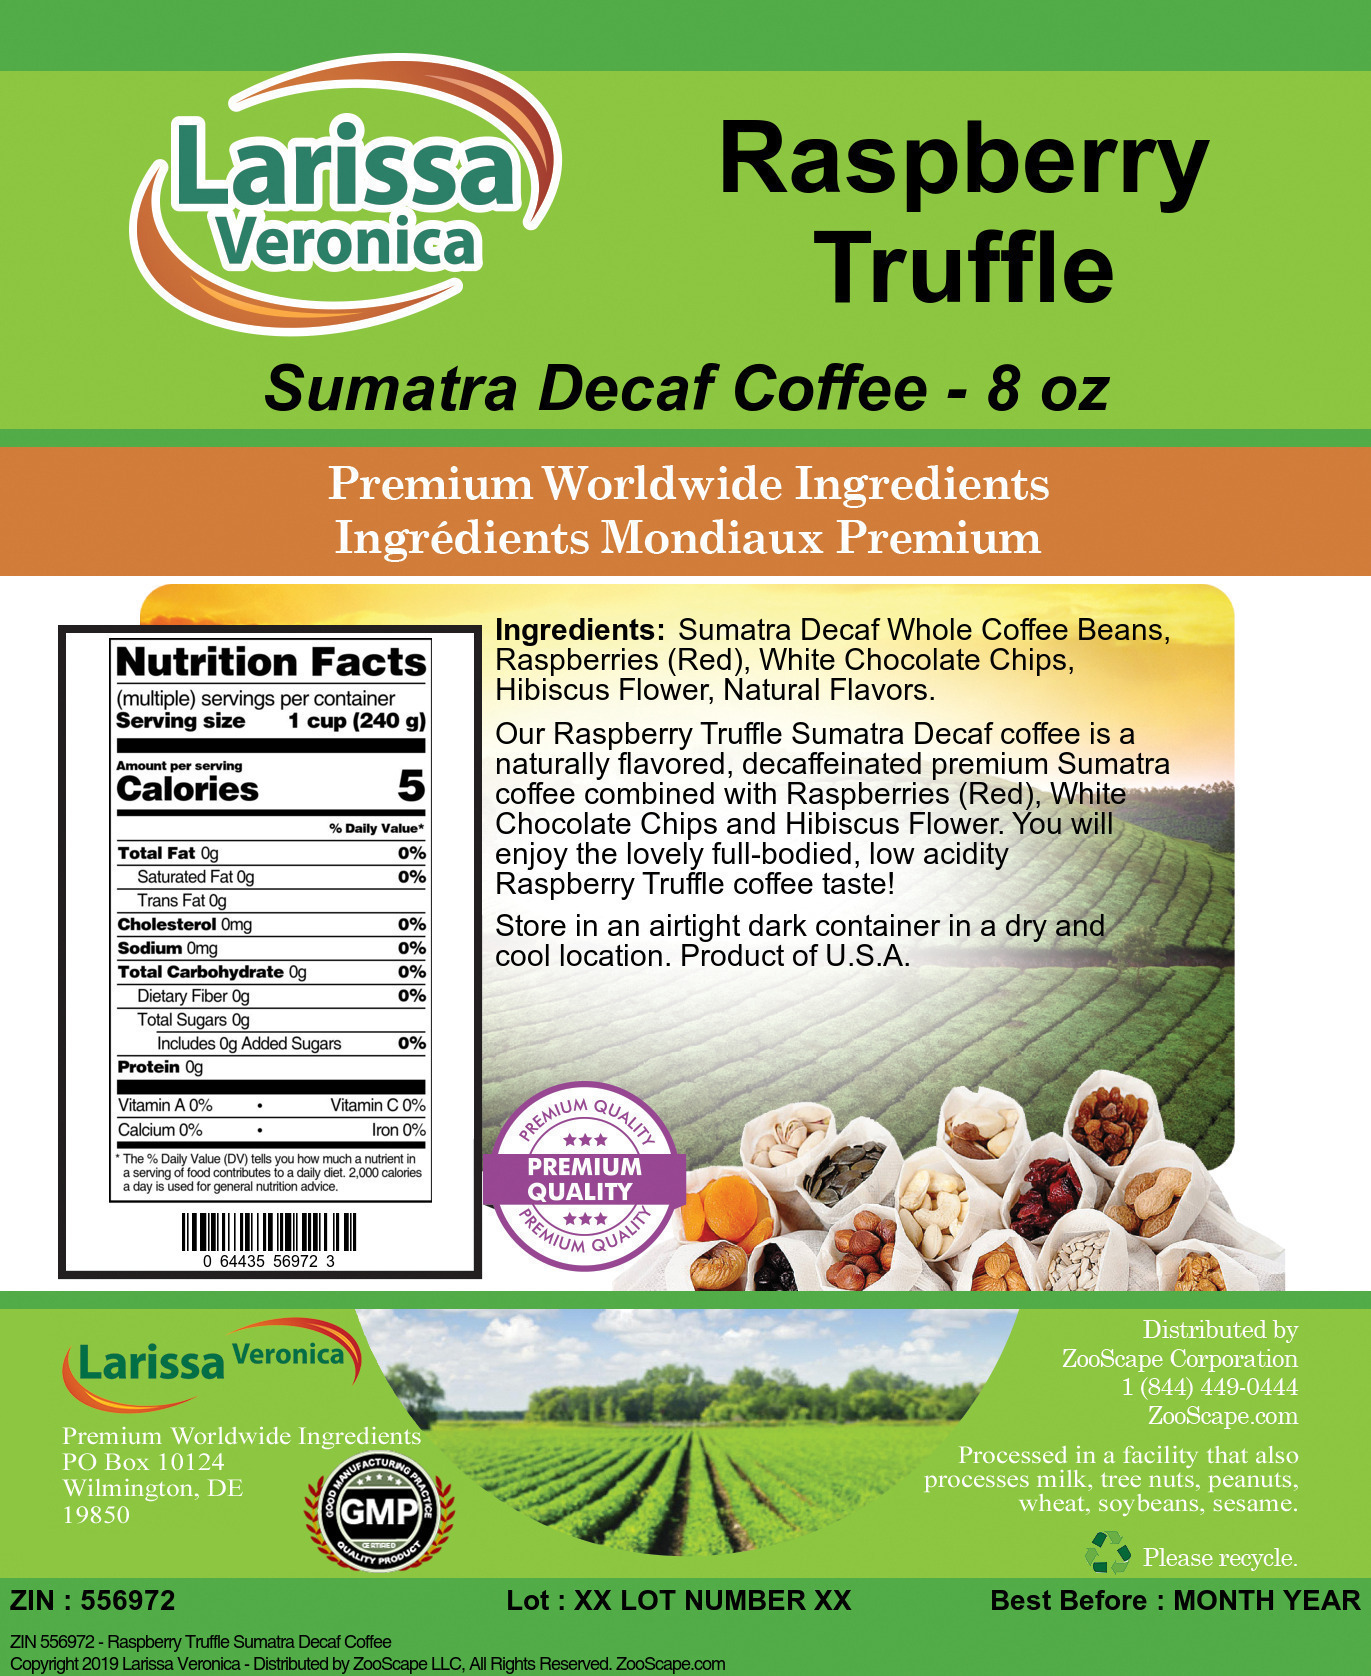 Raspberry Truffle Sumatra Decaf Coffee - Label